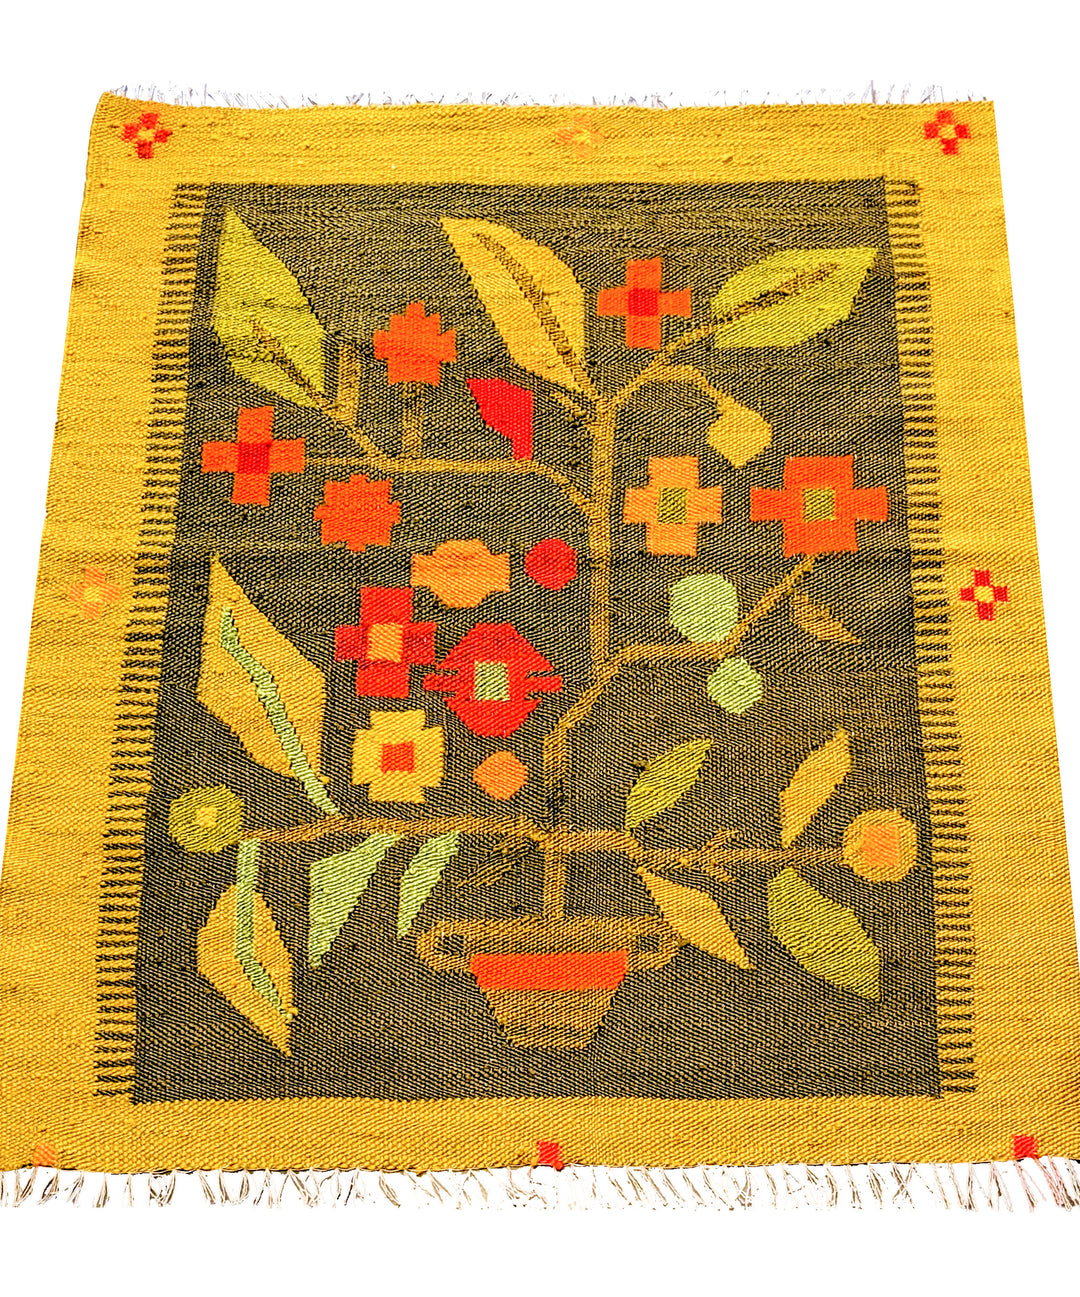 Bohread - Size: 2.11 x 2.8 - Imam Carpet Co